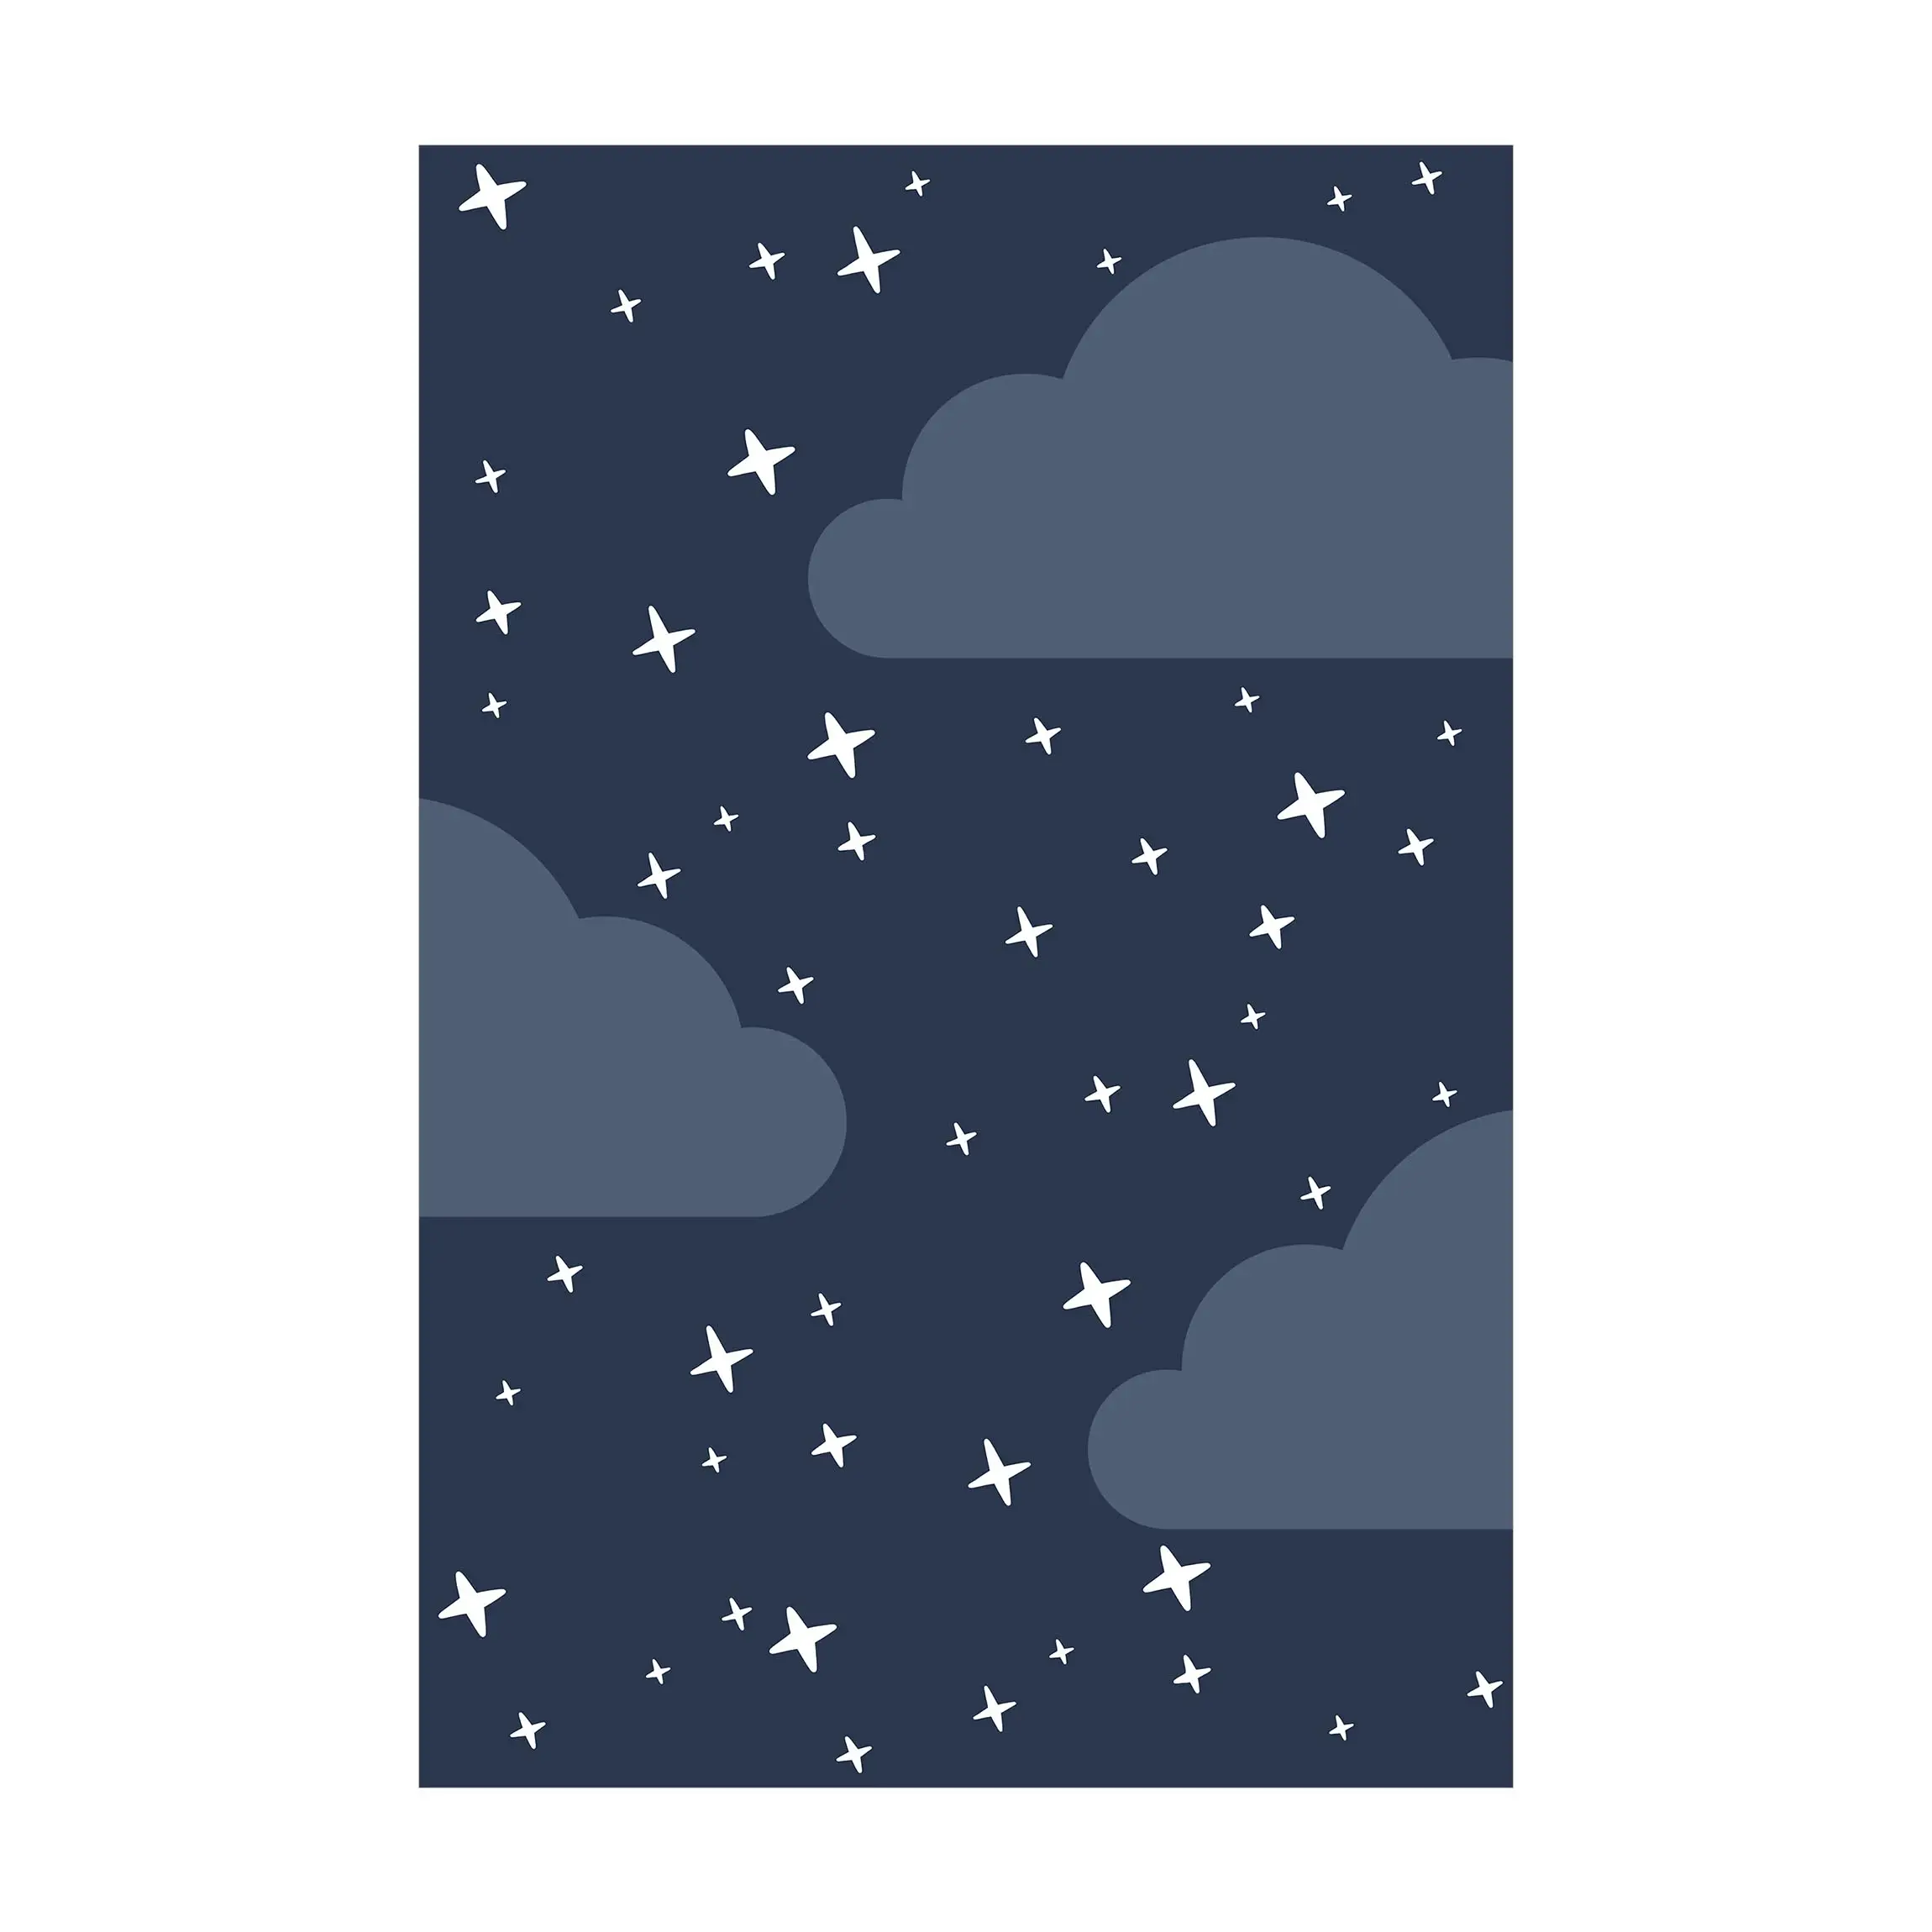 Nachthimmel Sterne im Stilisierte